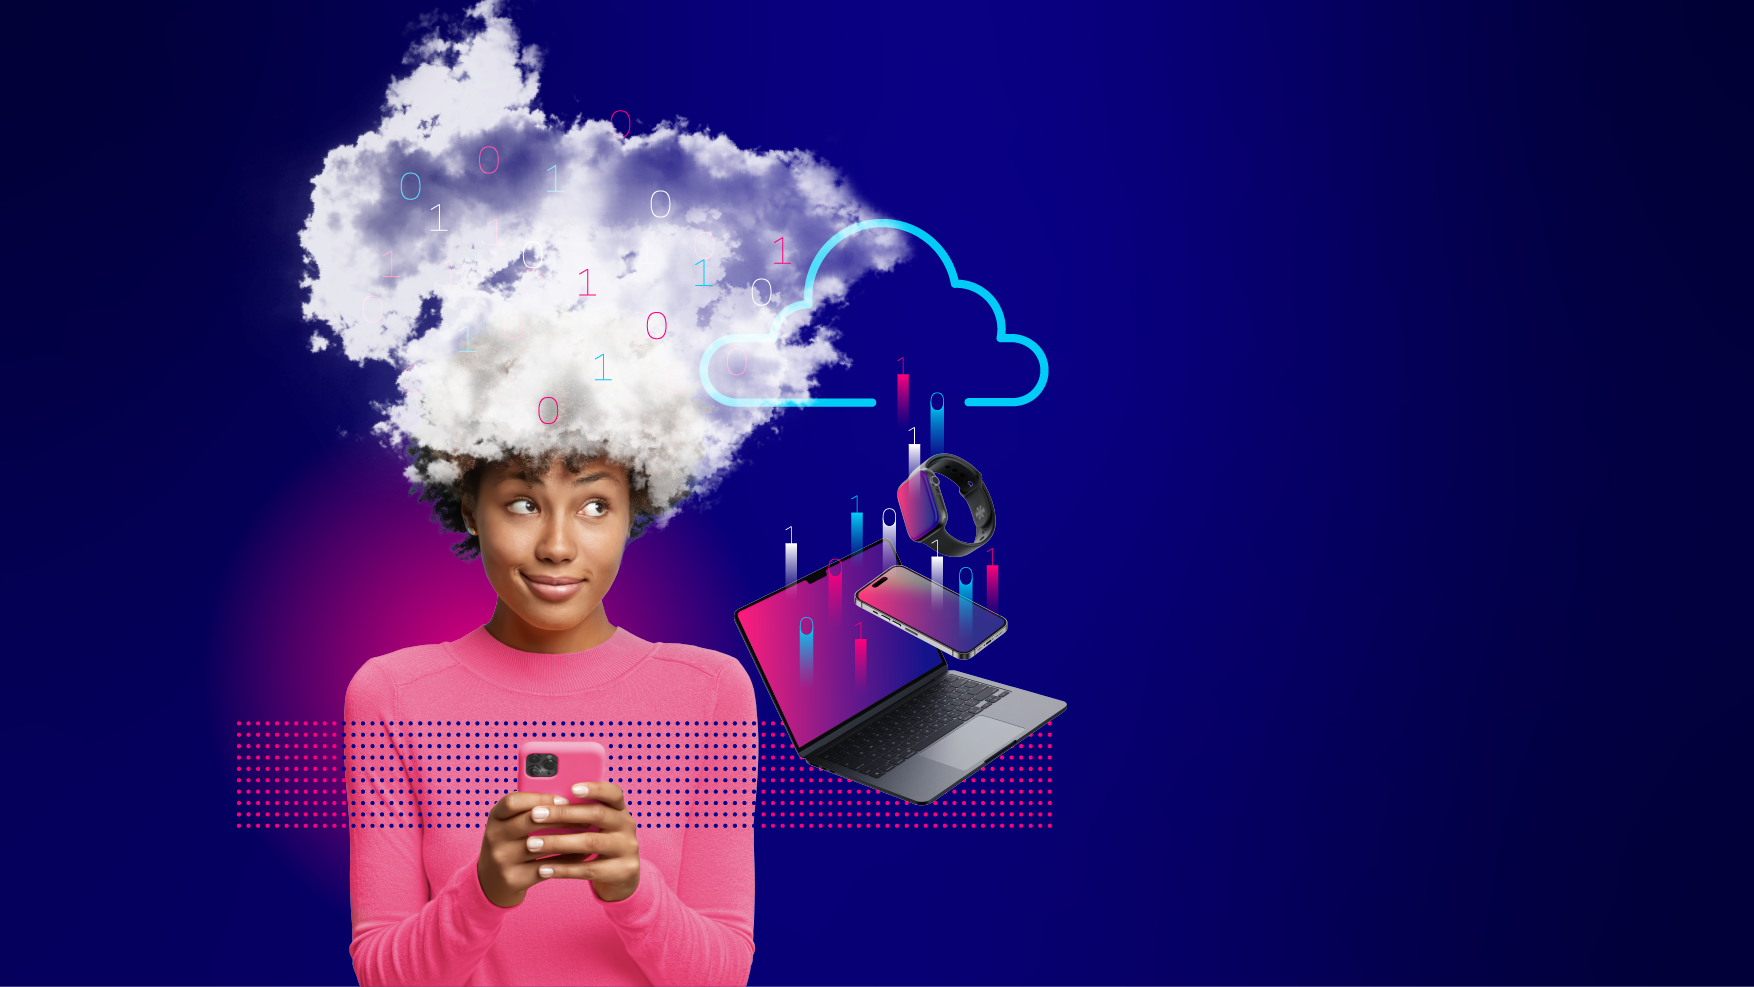 Illustrierendes Bild für Bereich Clouddienste und Services bei team neusta mit Modell und Wolke über dem Kopf